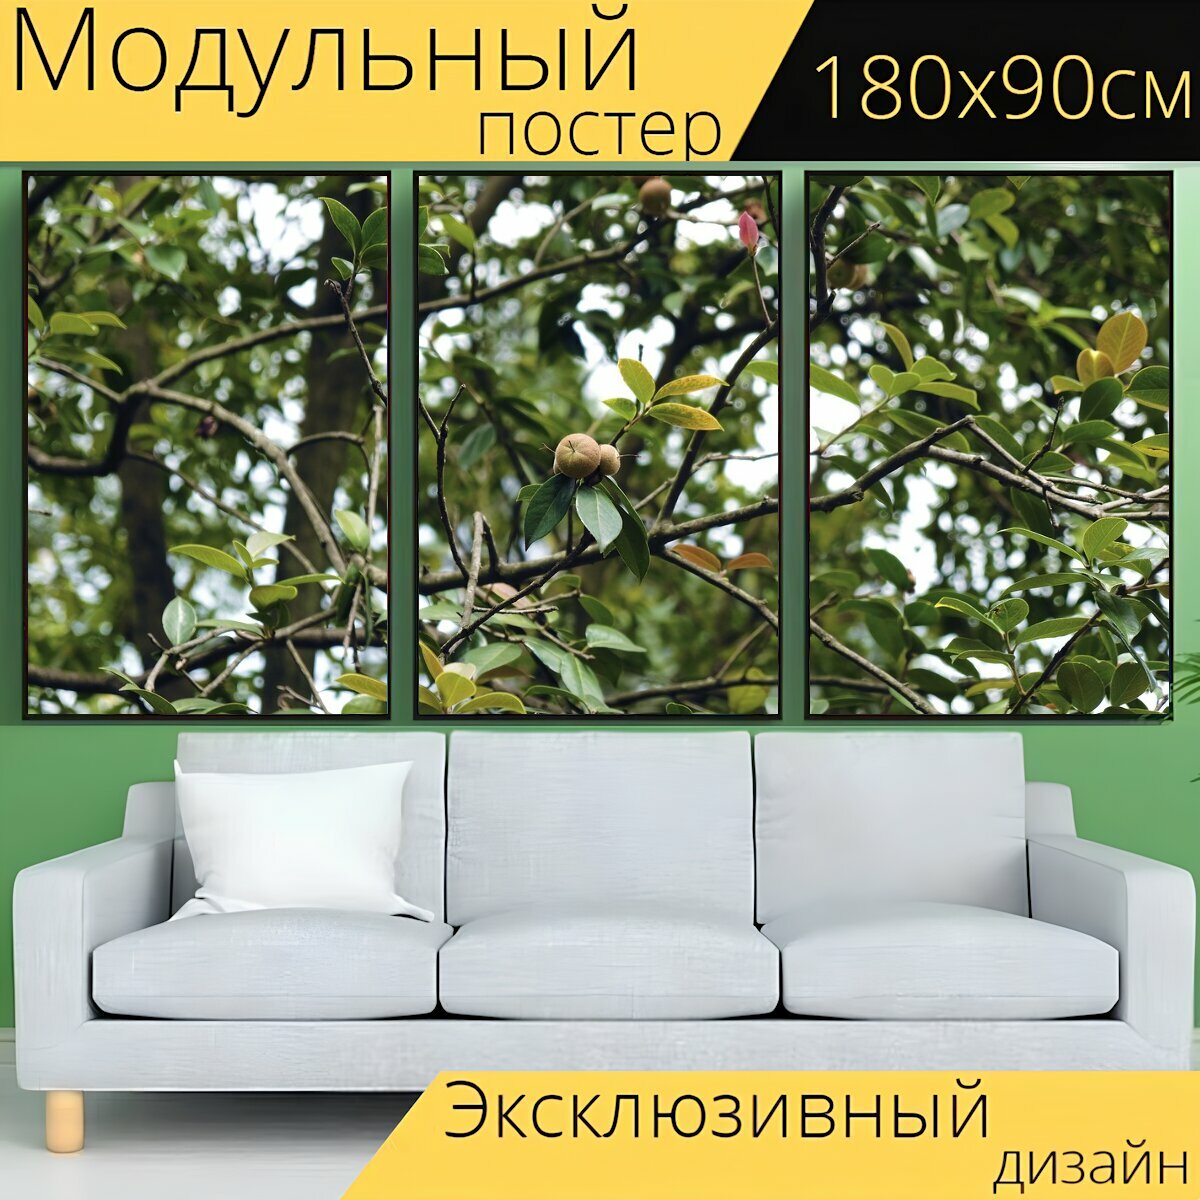 Модульный постер "Завод, фрукты, дерево" 180 x 90 см. для интерьера